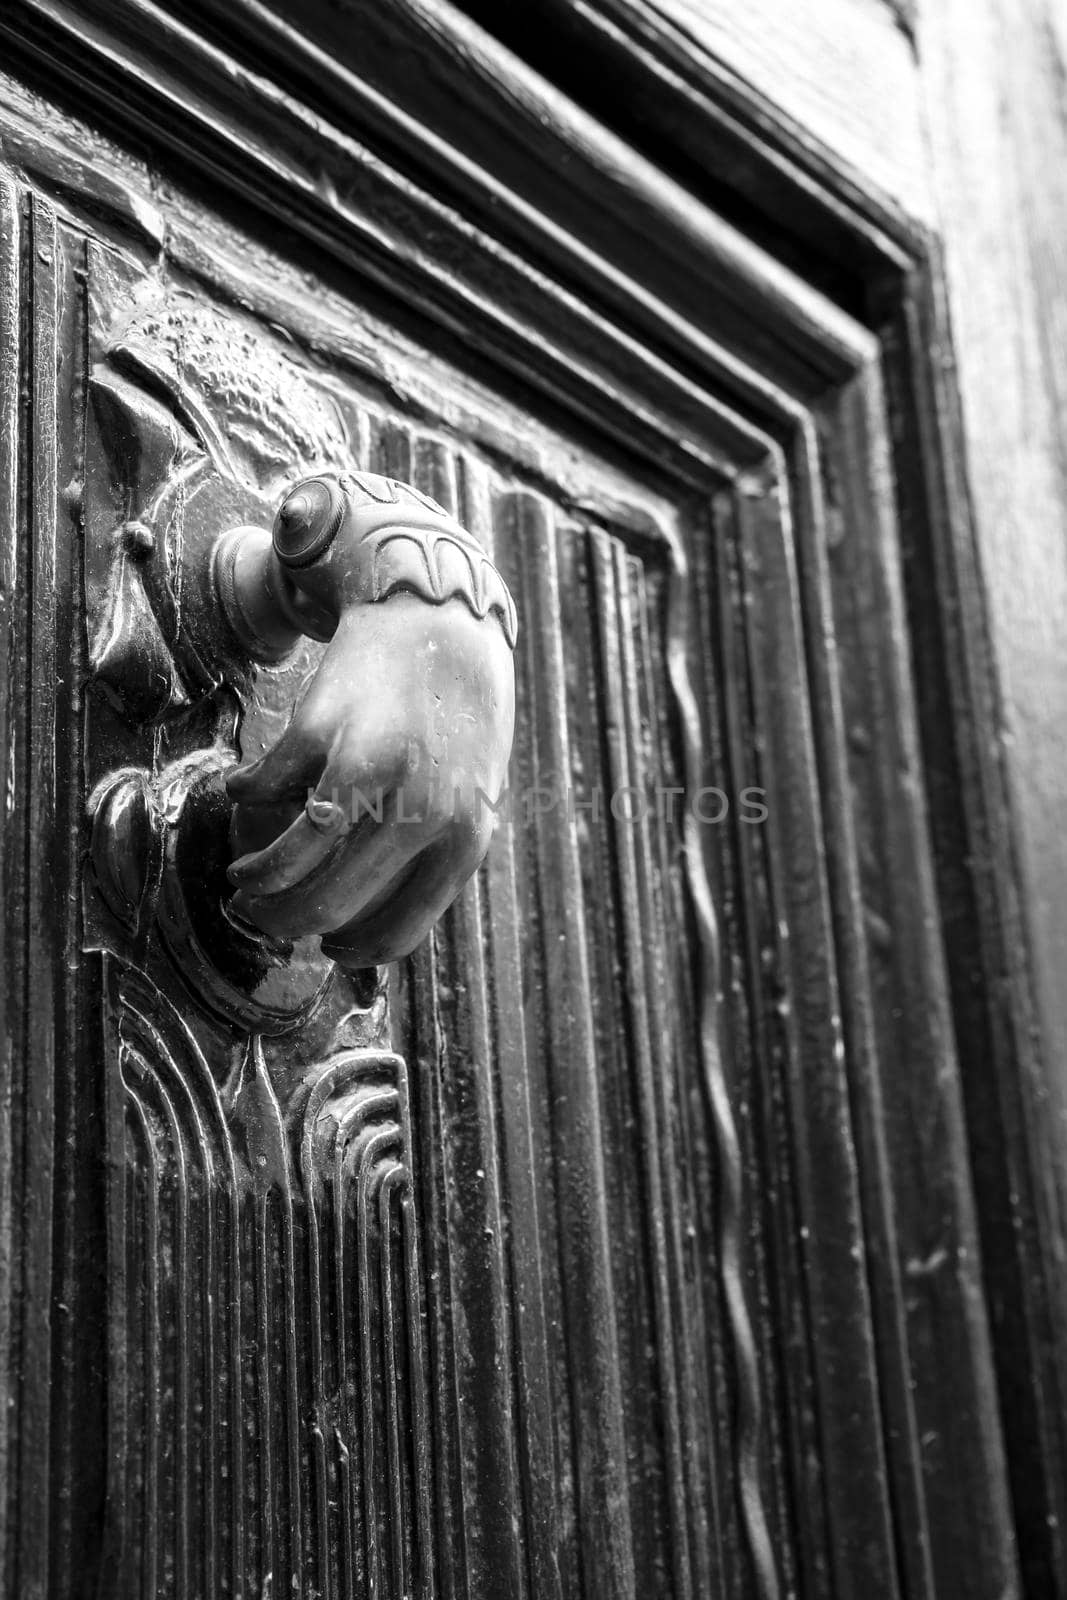 Golden doorknocker with hand shape on old wooden door by soniabonet